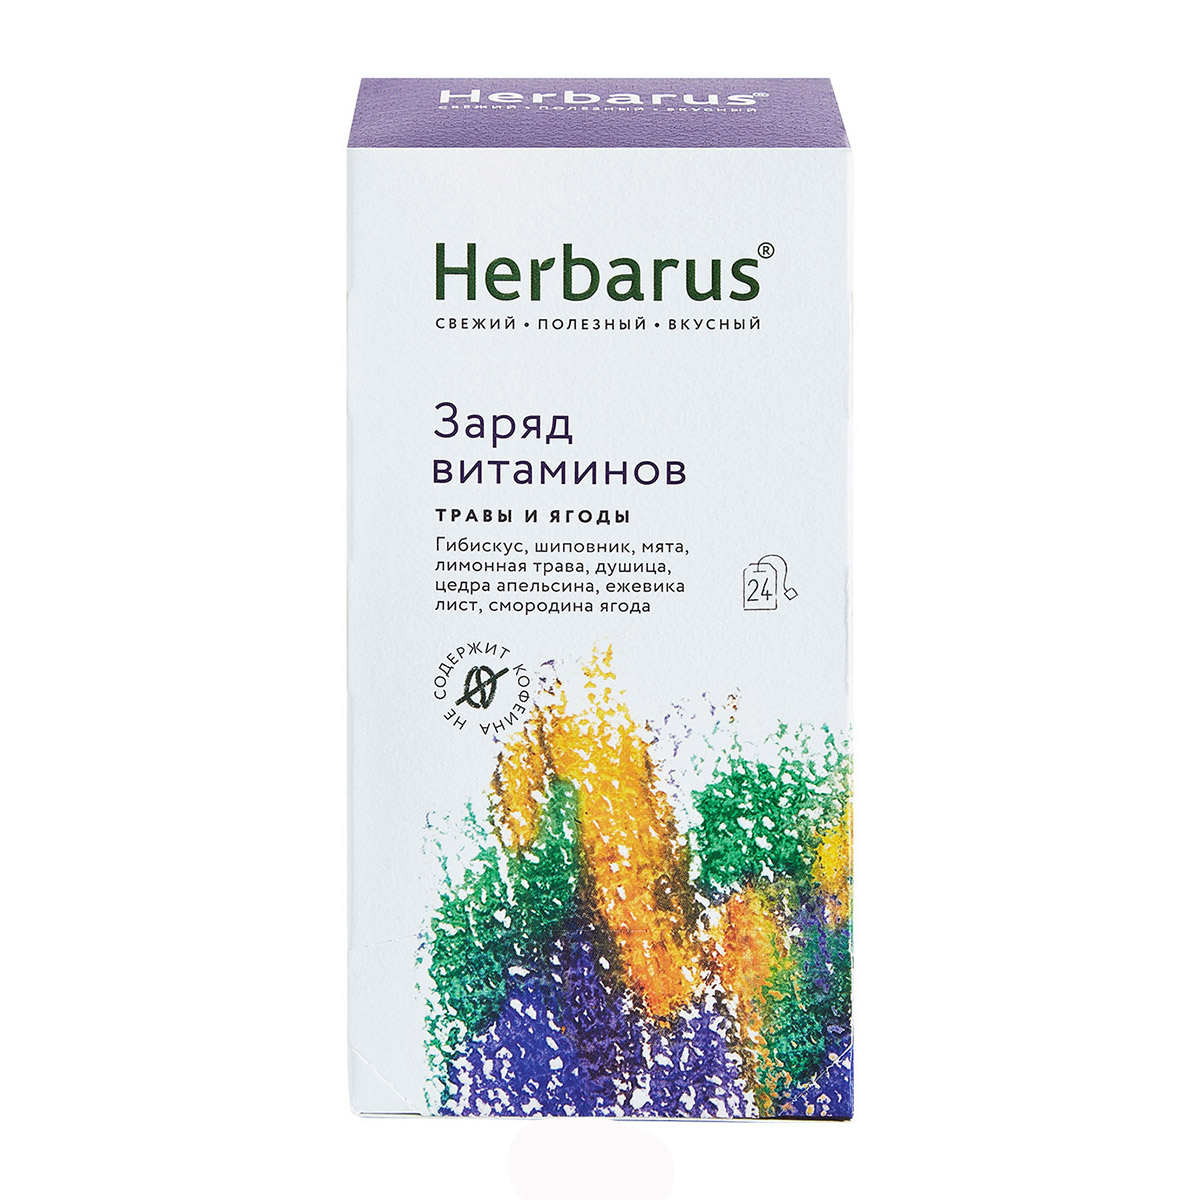 Herbarus Чайный напиток Заряд витаминов, 24 х 1,8 г (Herbarus, Травы и ягоды) чайный напиток herbarus заряд витаминов 24 пакетика